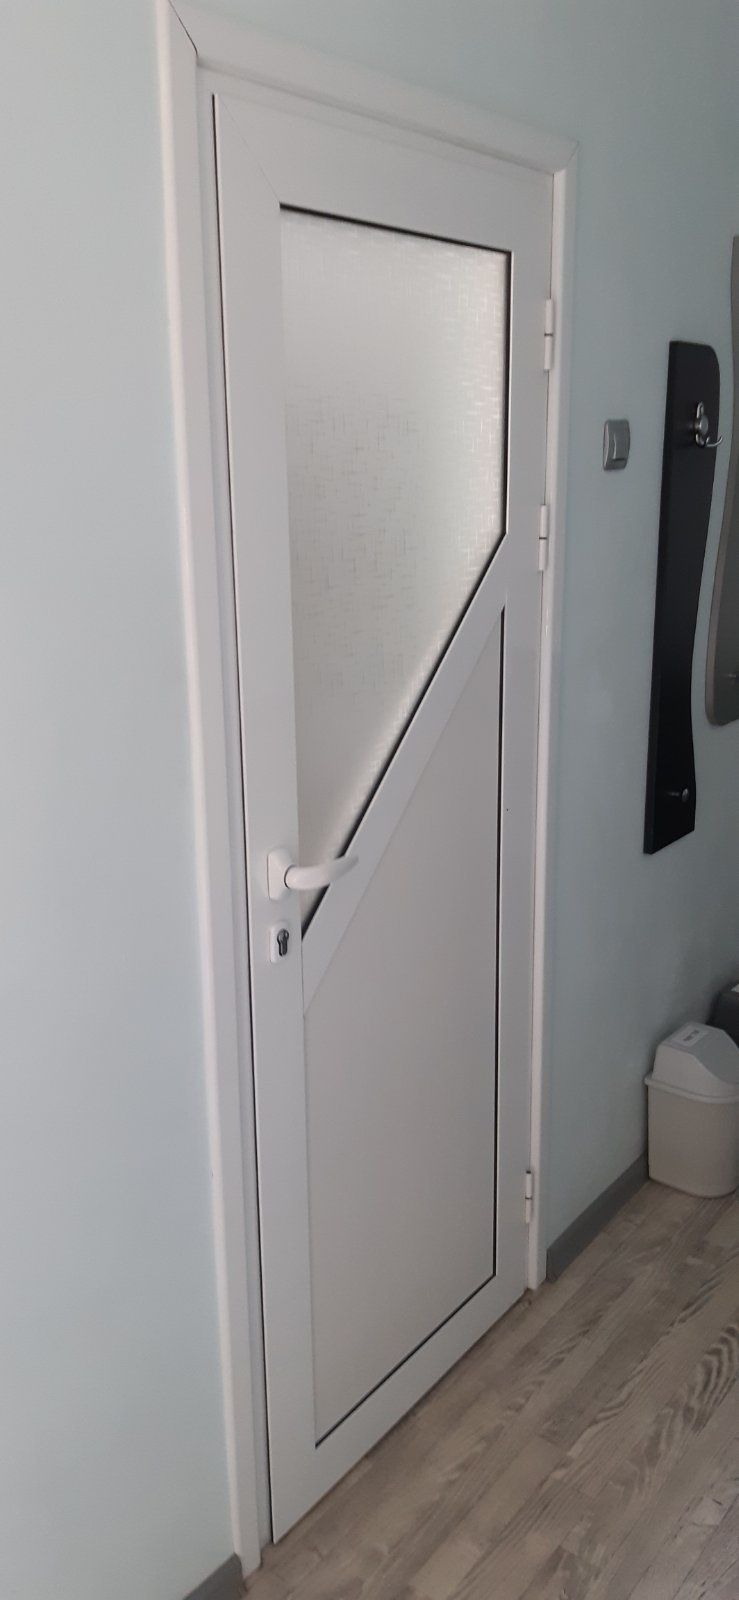 Бяла алуминиева интериорна врата 
Размери 190 / 70
В мно